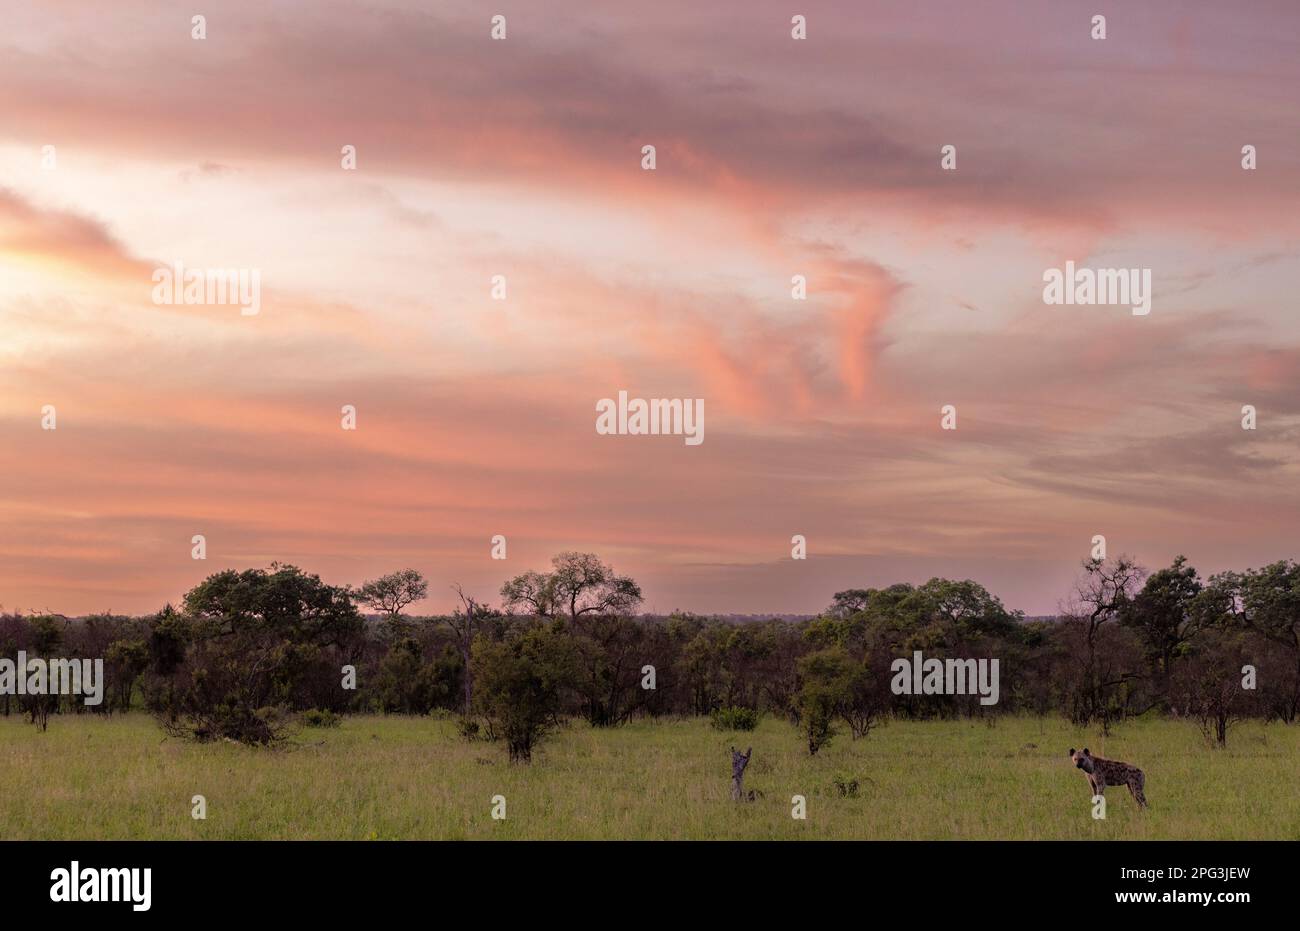 Photo d'un ciel de coucher de soleil avec une hyène solitaire debout dans une savane ouverte Banque D'Images